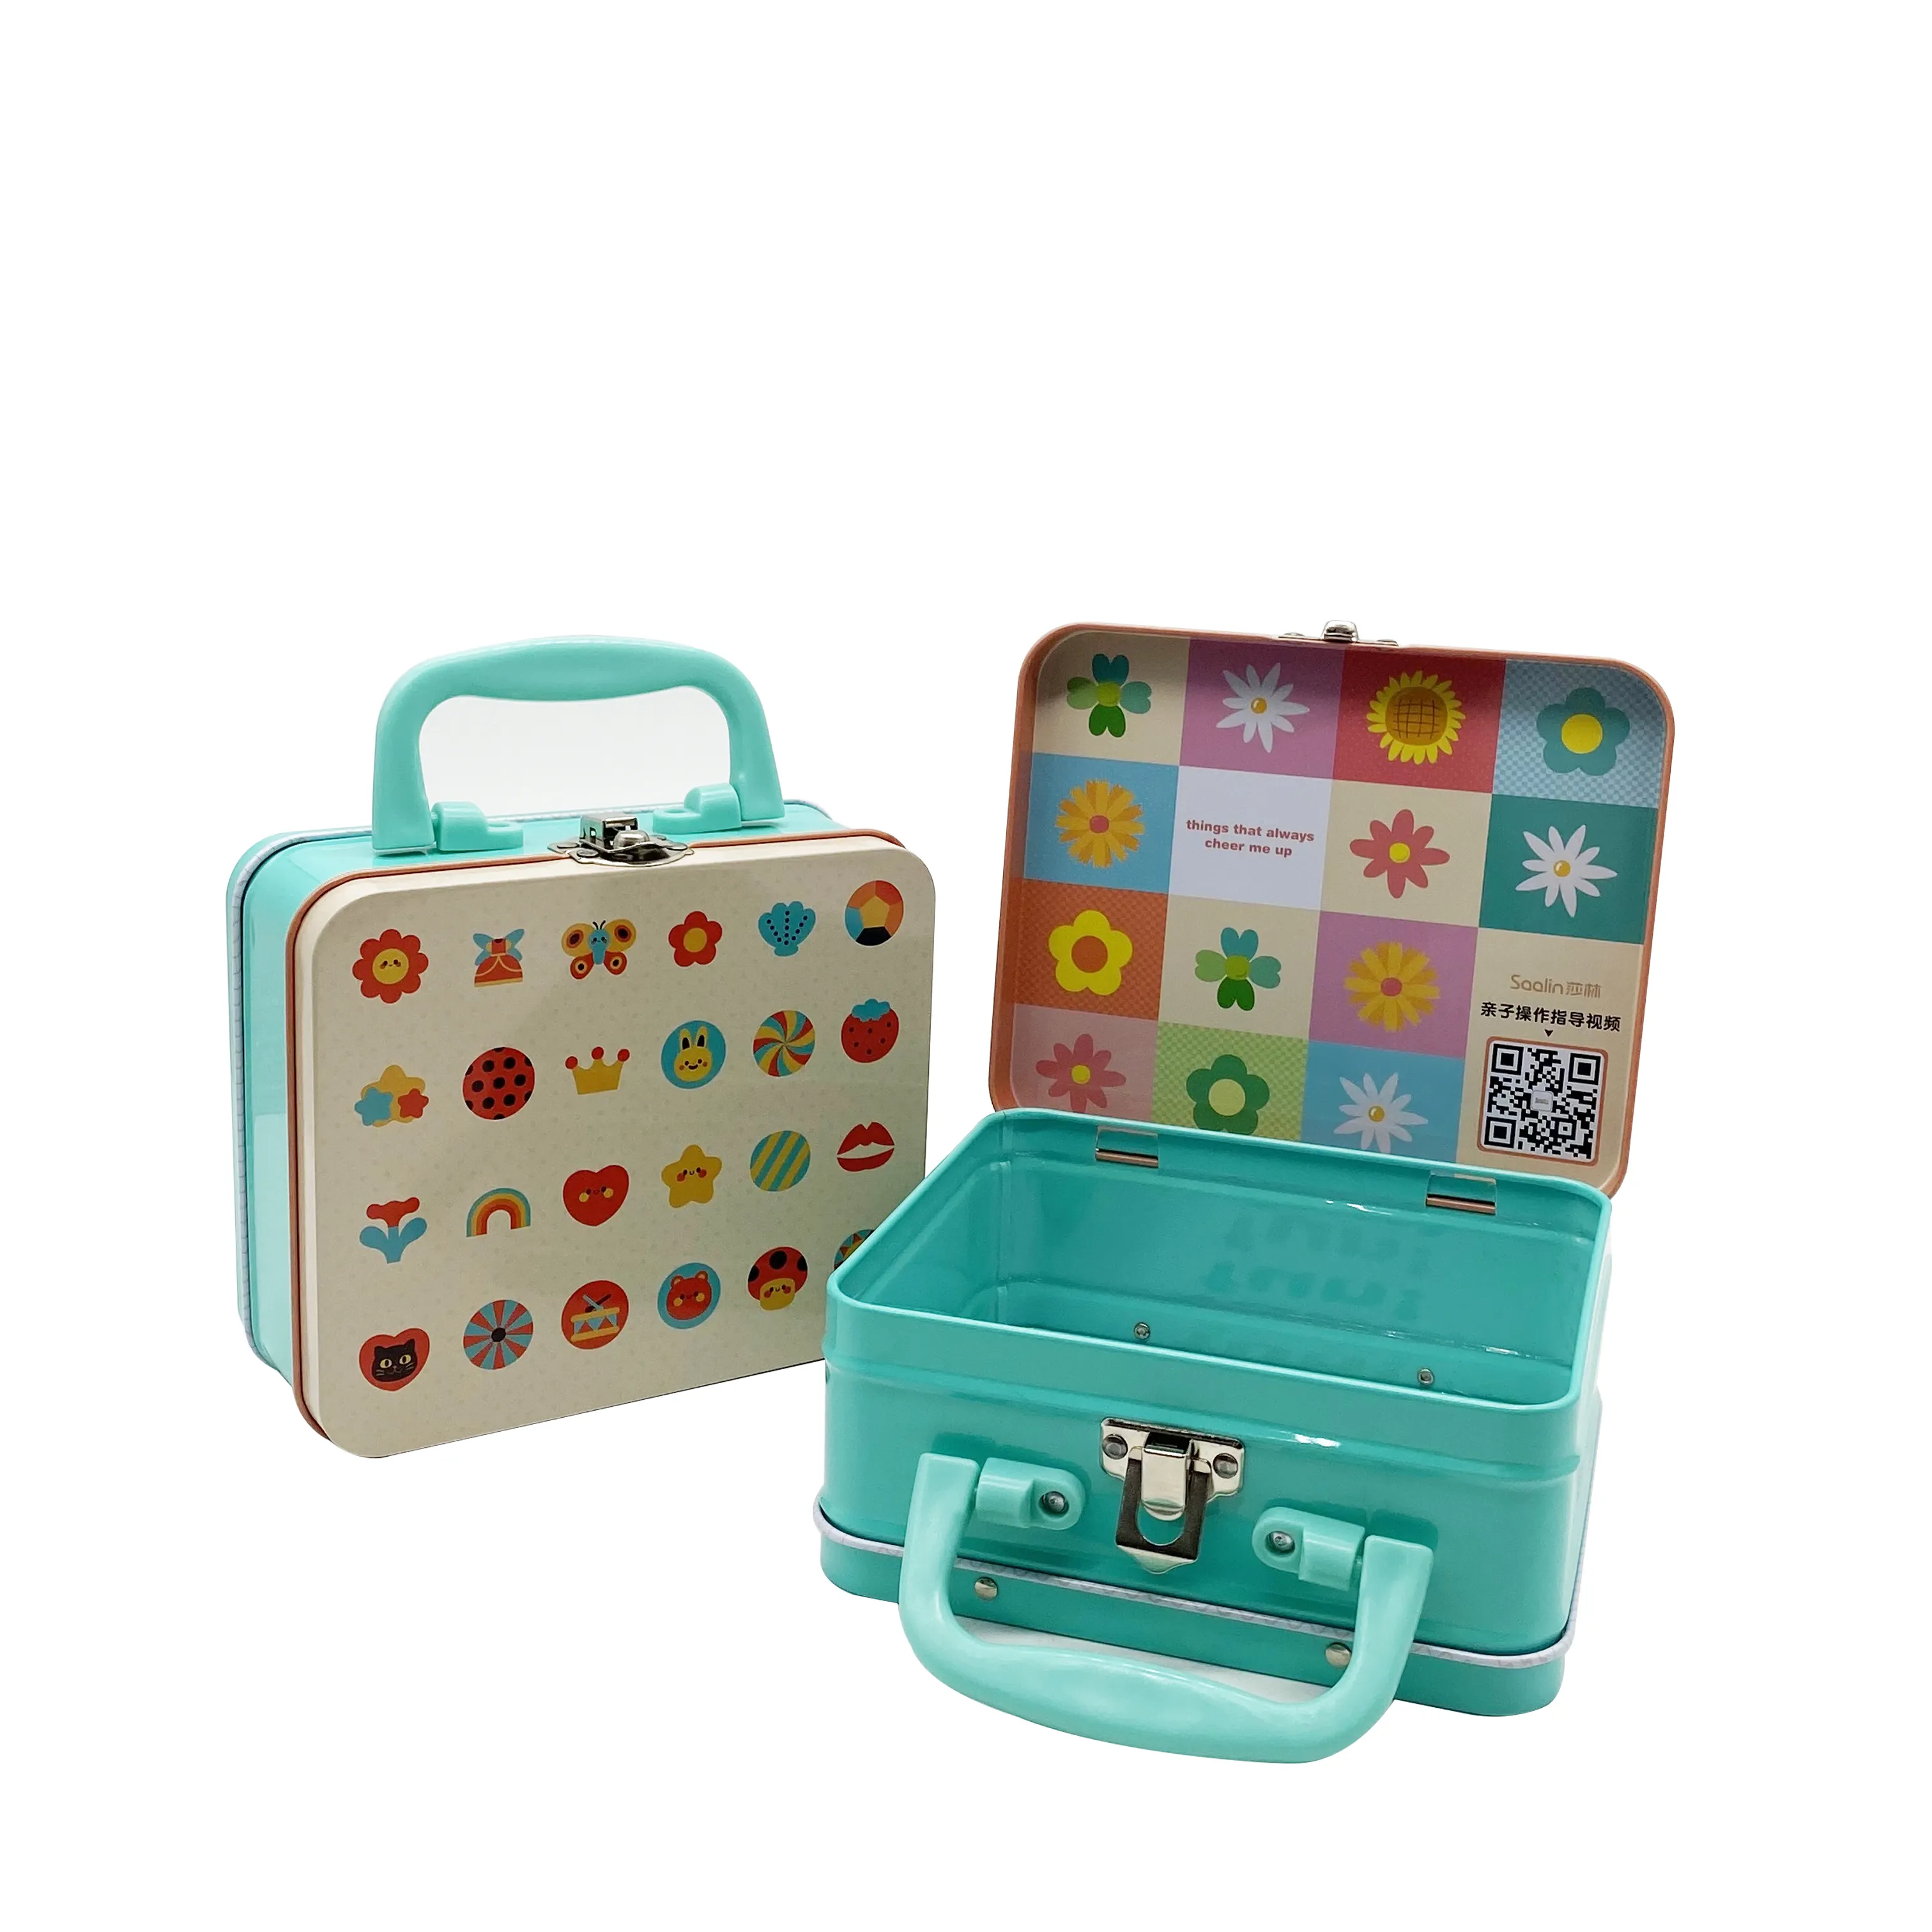 Boîte en métal rectangulaire avec logo imprimé personnalisé en usine valise cadeau boîte à lunch en étain avec poignée pour enfants